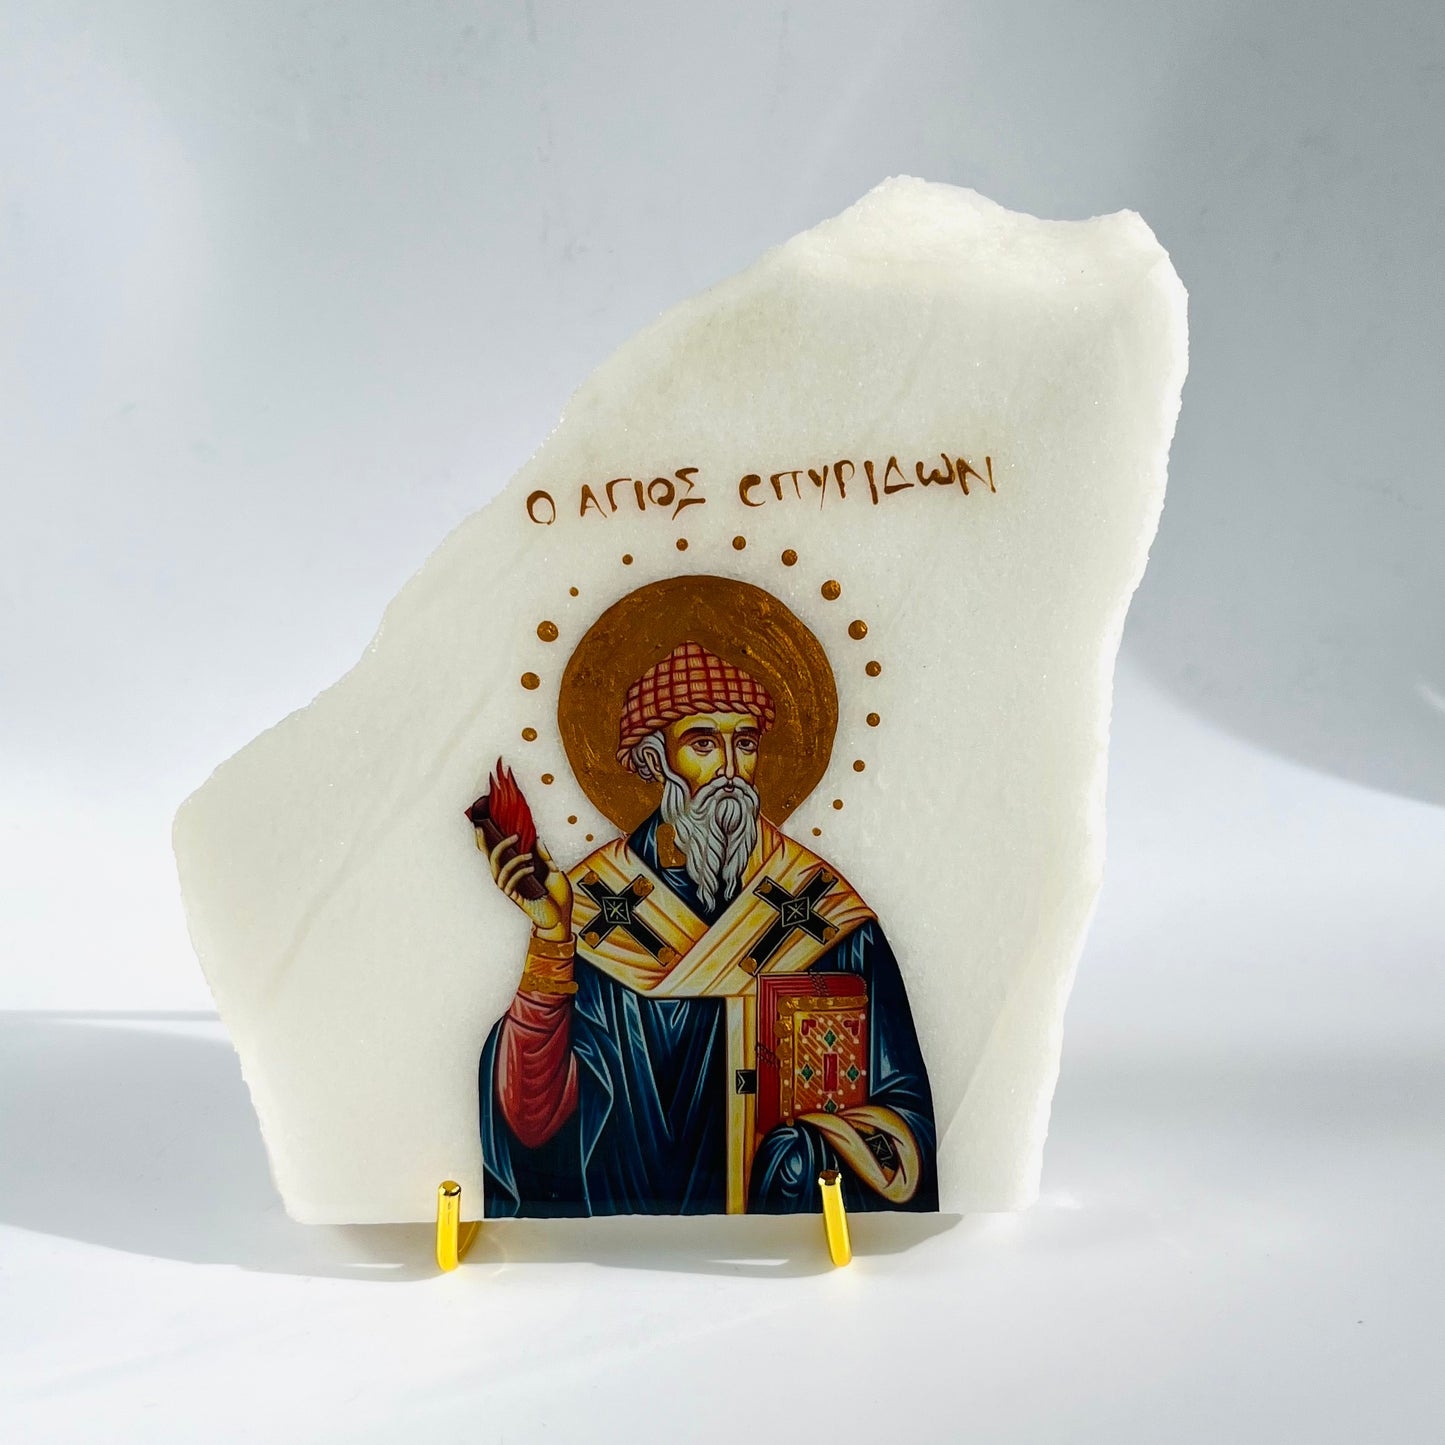 Agios Spyridon / Saint Spyridon